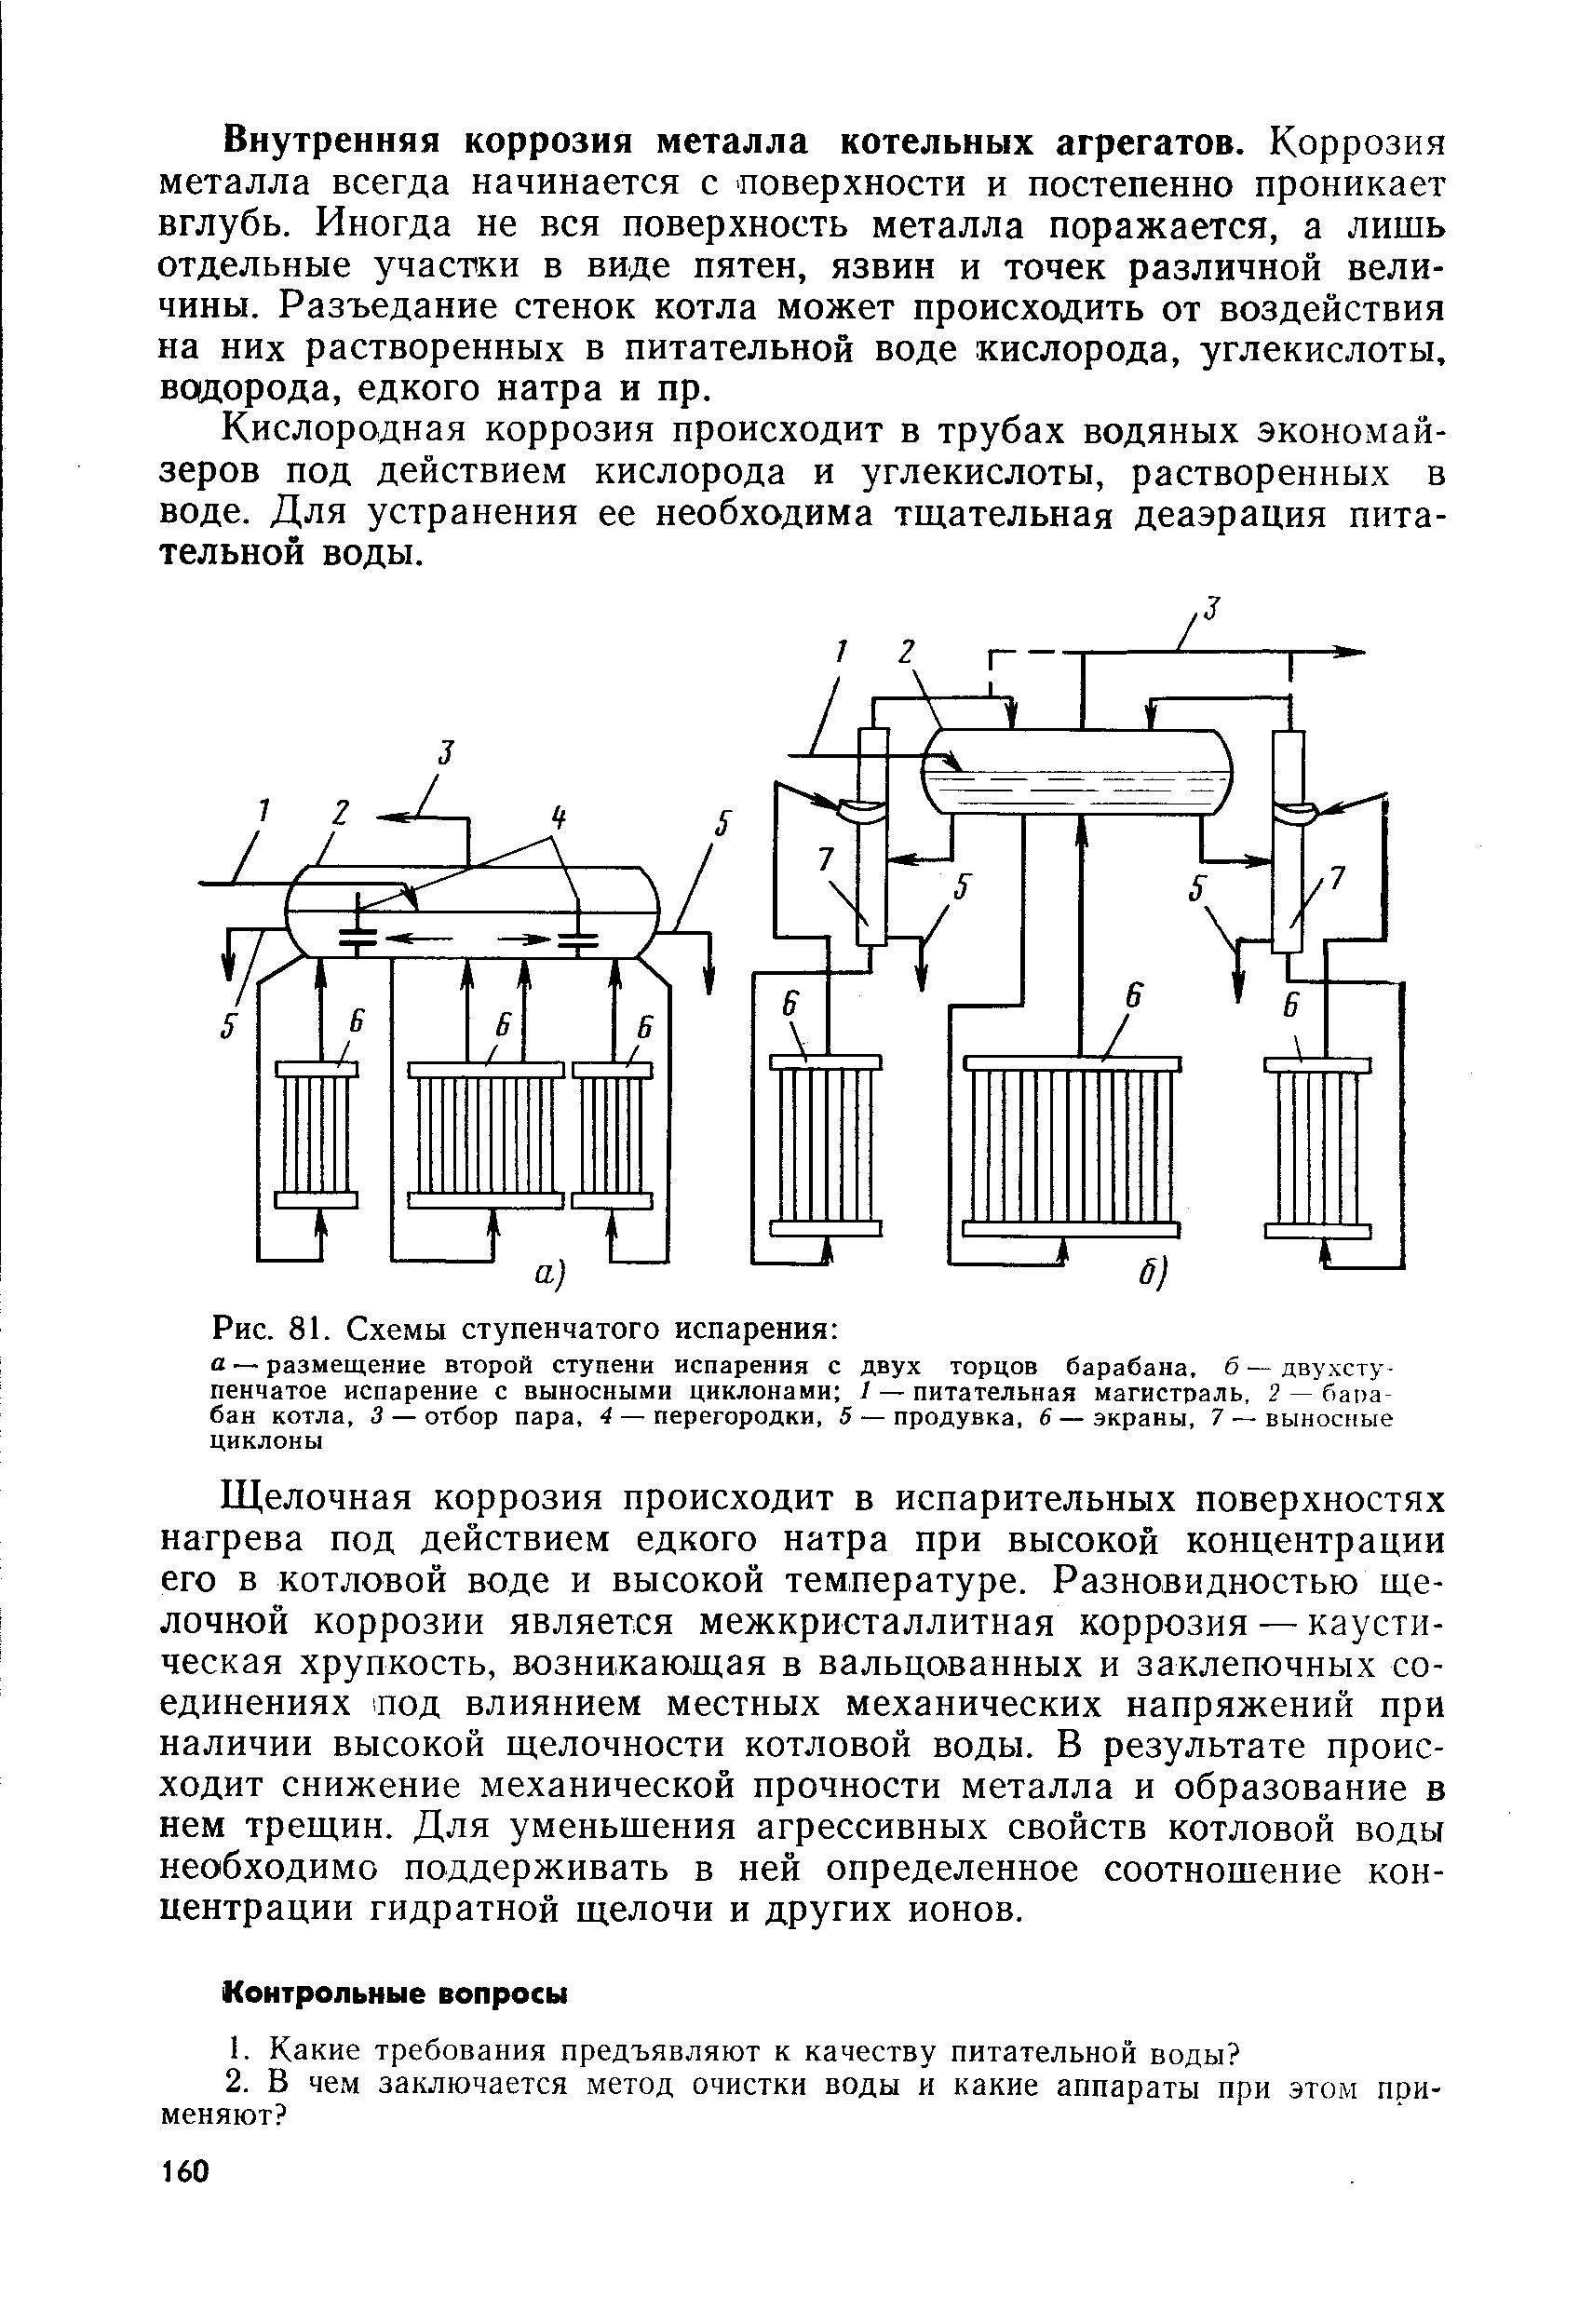 Схема трехступенчатого испарения